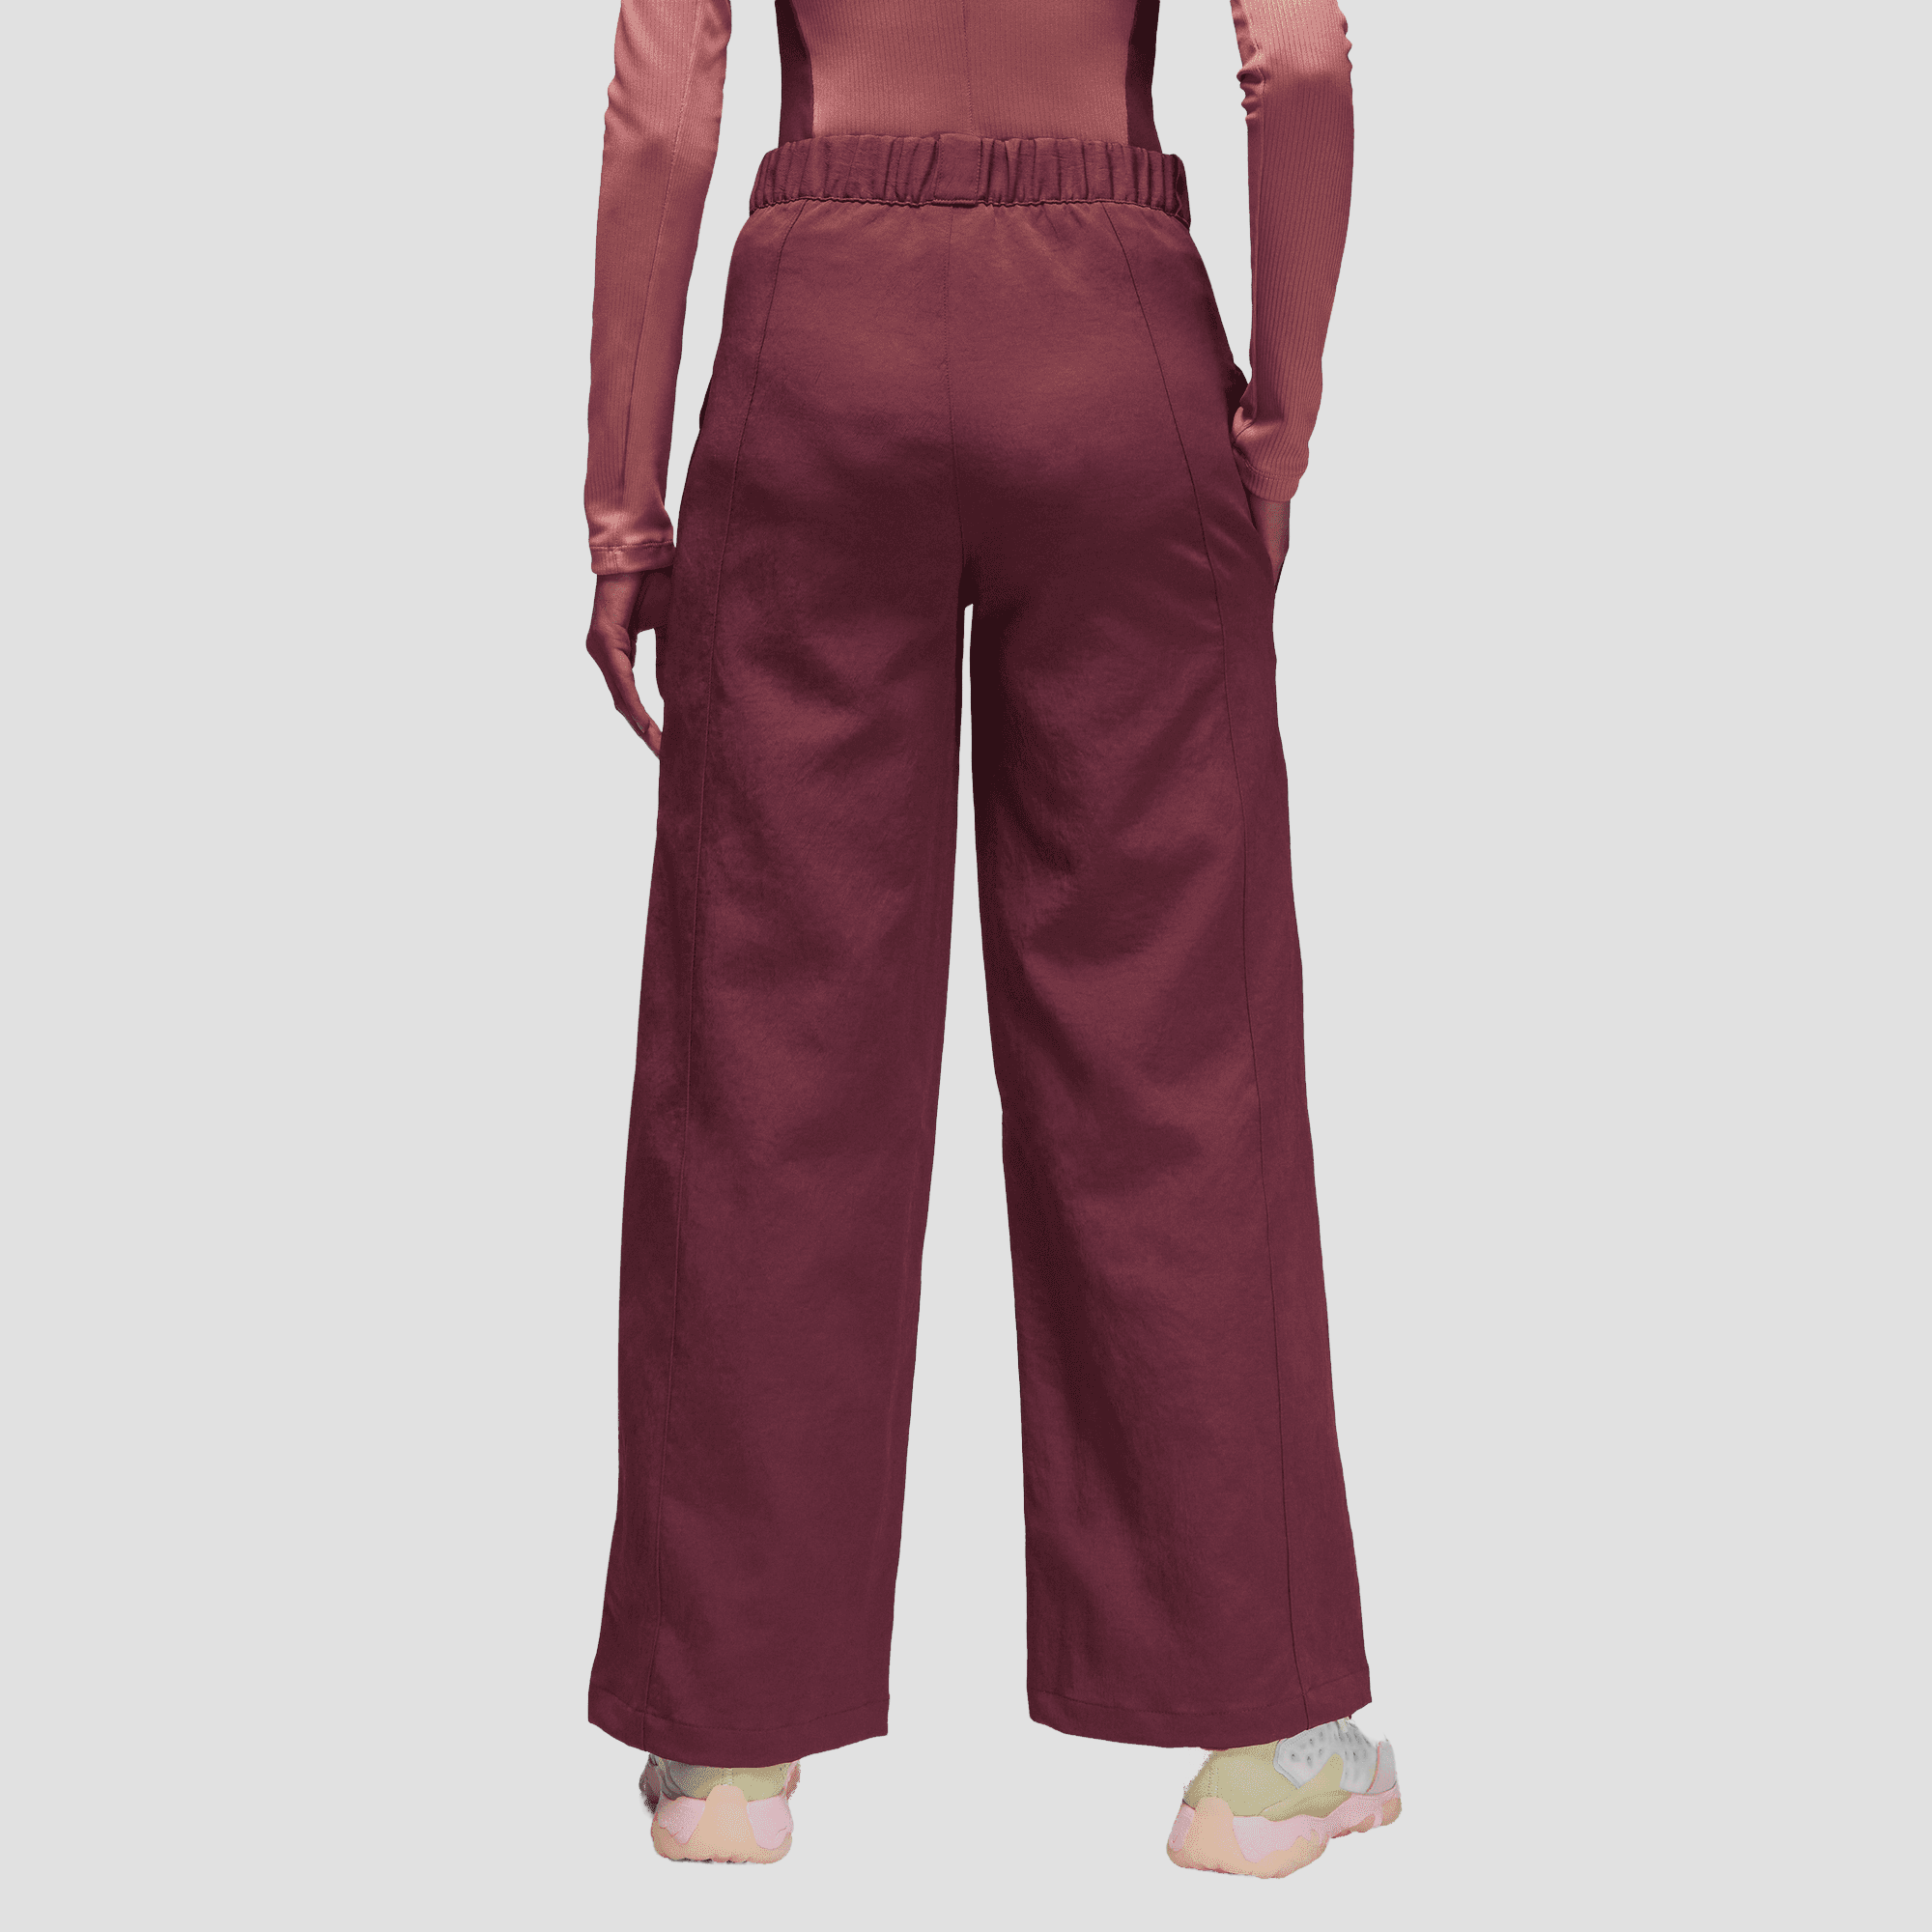 Nuevo Jordan Mujer Pantalones de Chándal DV1258-645 Rojo Estándar